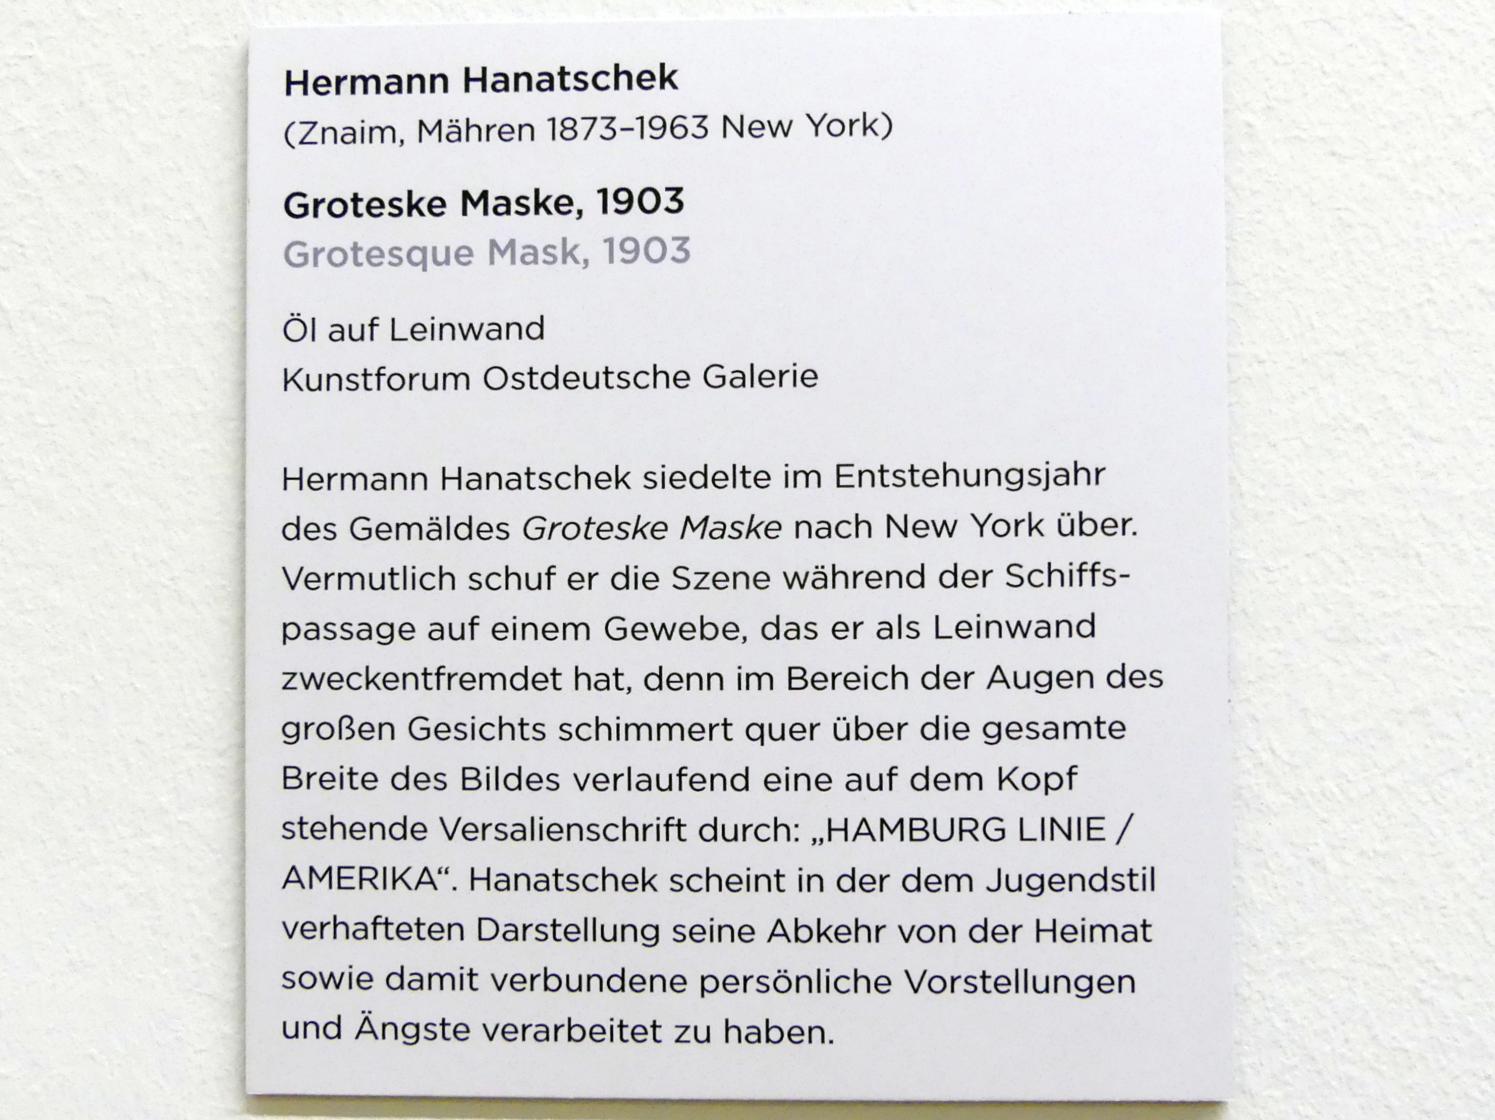 Hermann Hanatschek (1903), Groteske Maske, Regensburg, Ostdeutsche Galerie, Saal 11, 1903, Bild 2/2